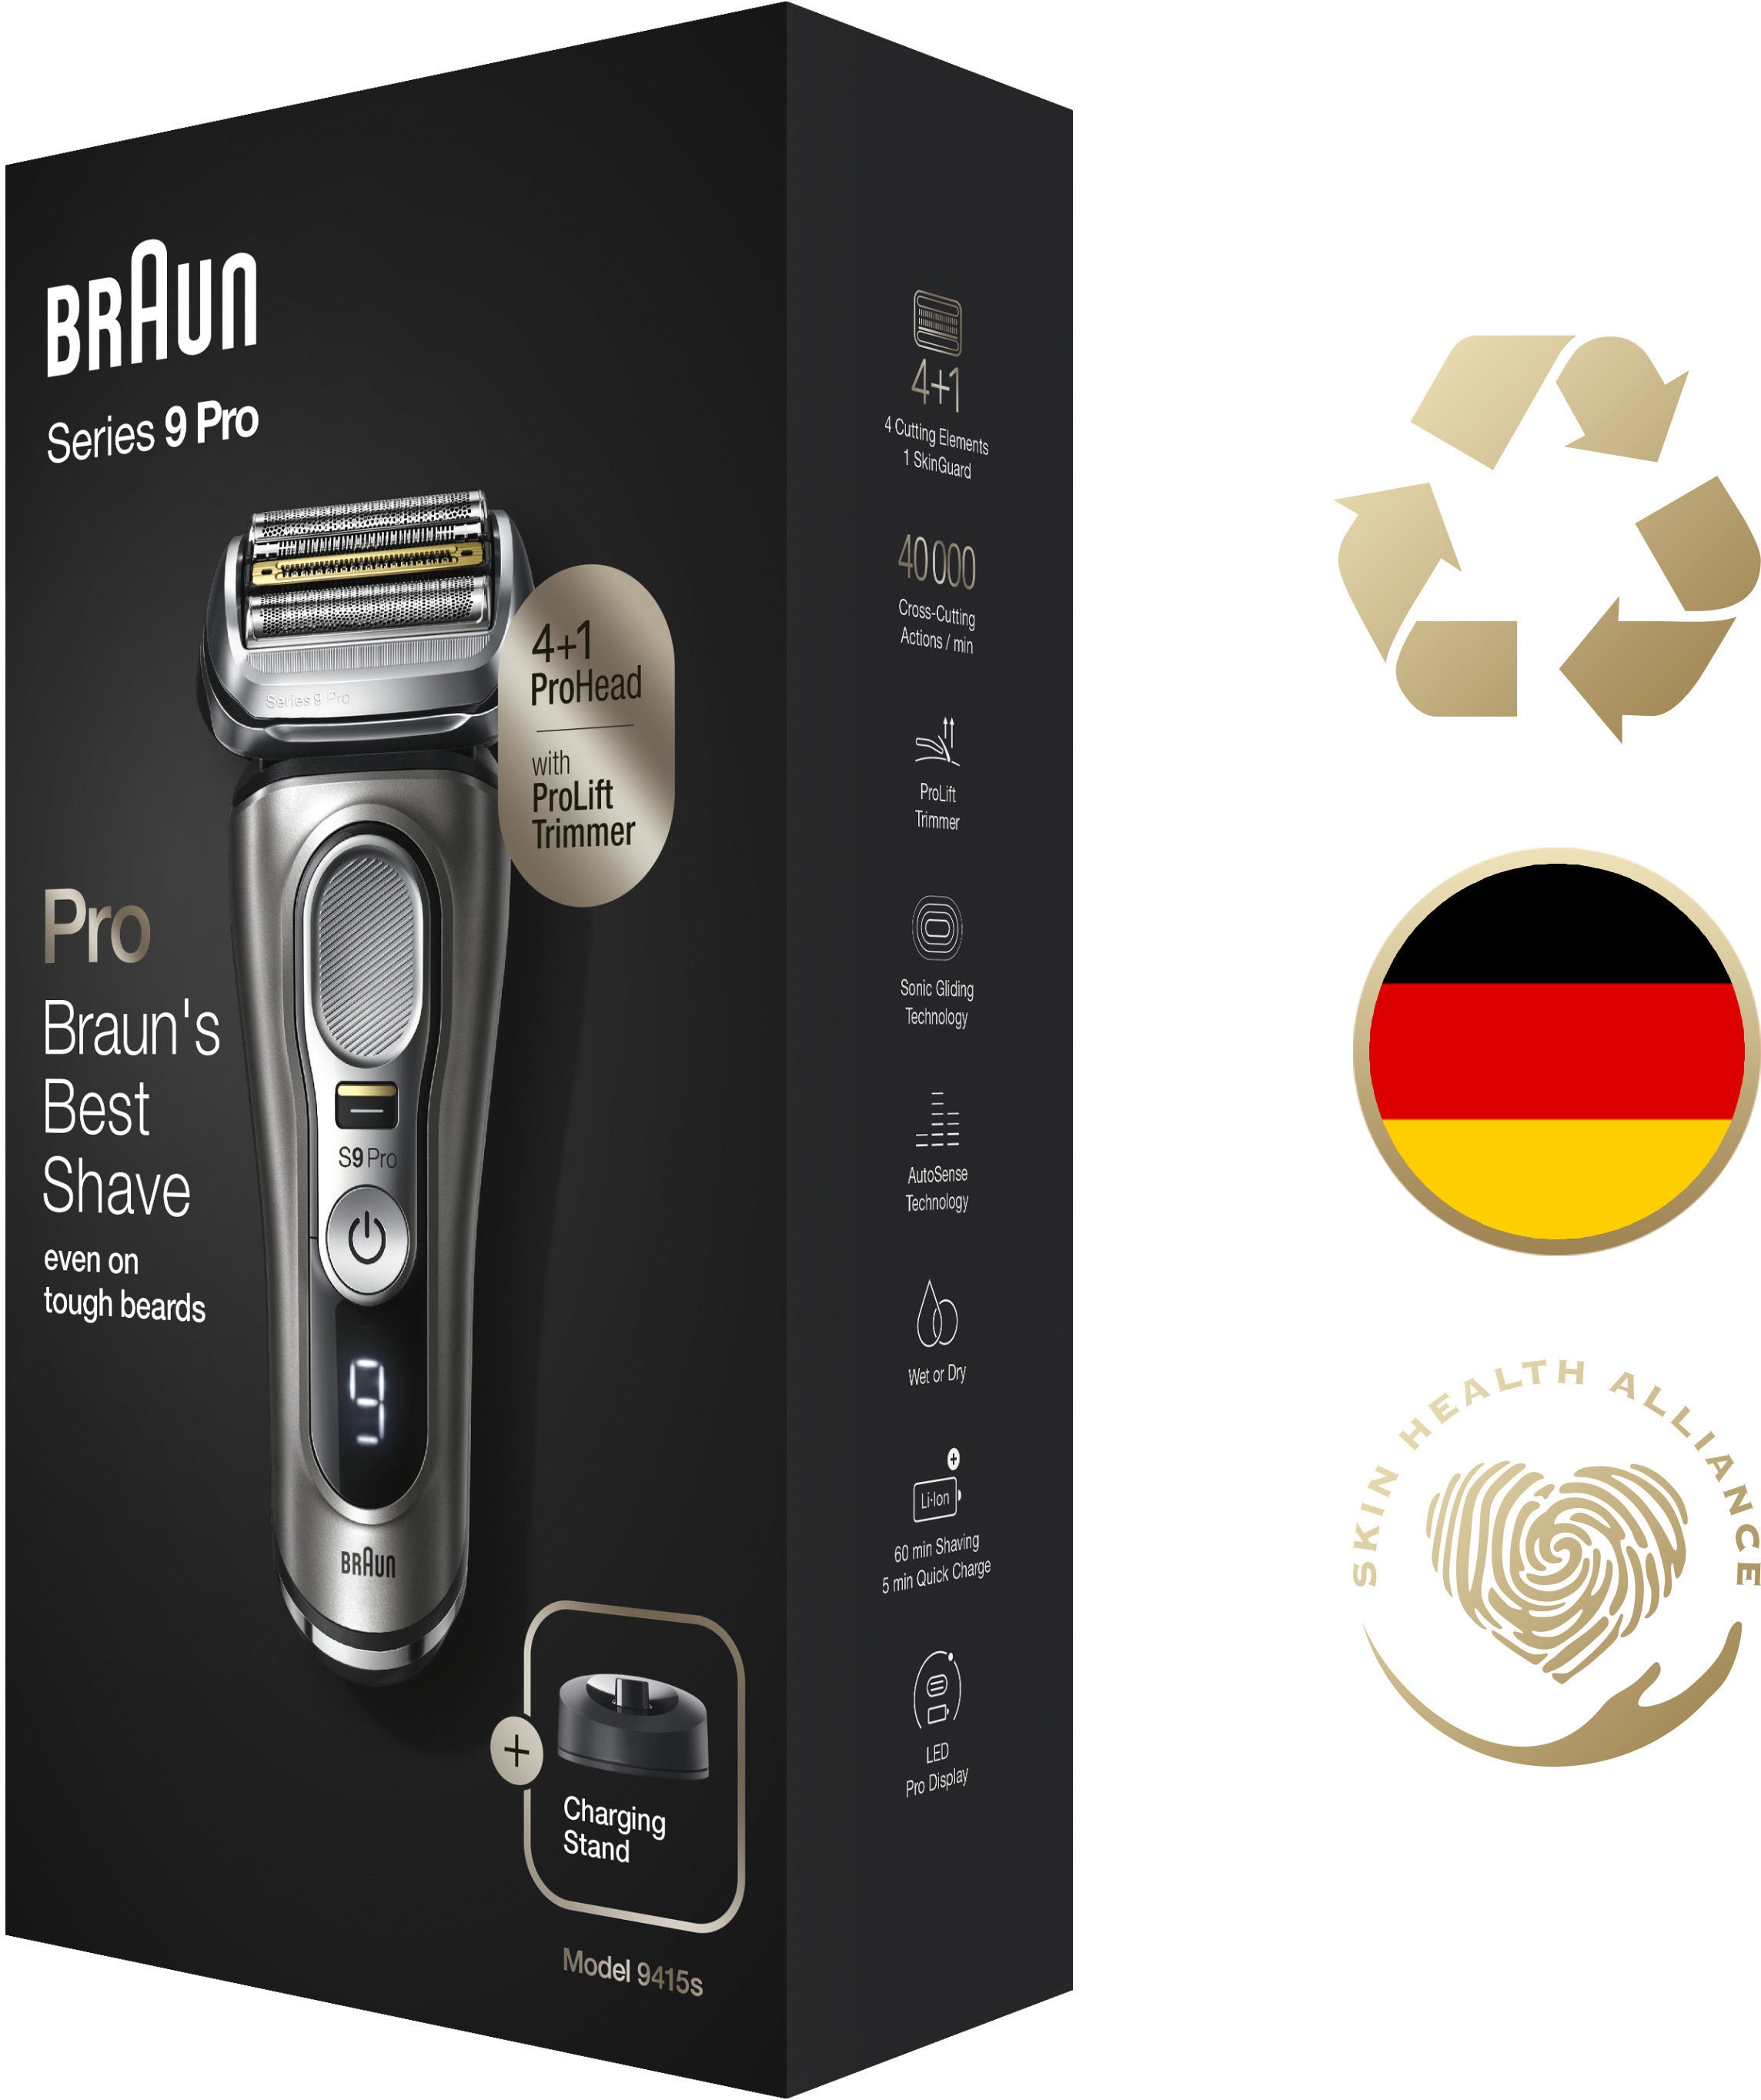 Braun Elektrorasierer »Series 9 Pro 9497cc«, 5-Stufen-Reinigungs- und  Ladestation, 1 St. Aufsätze, Wet&Dry, 4+1 Scherkopf günstig kaufen